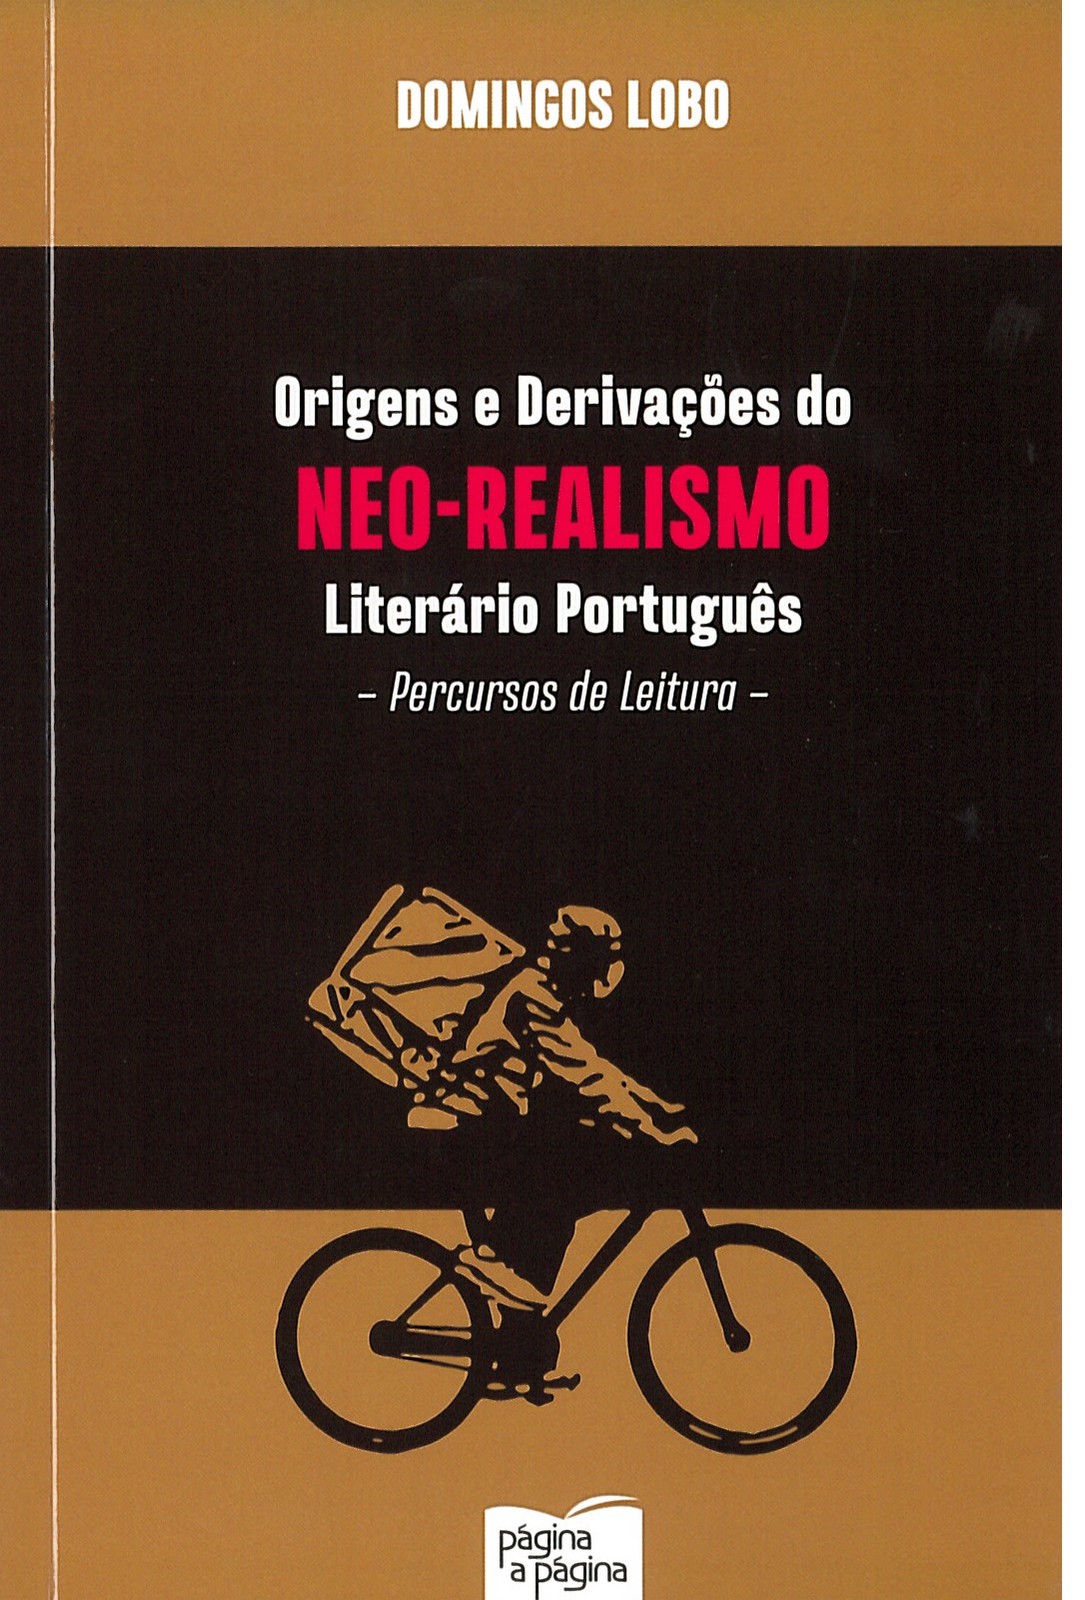 Domingos Lobo - Origens e Derivações do Neo-Realismo Literário Português, Percursos de Leitura